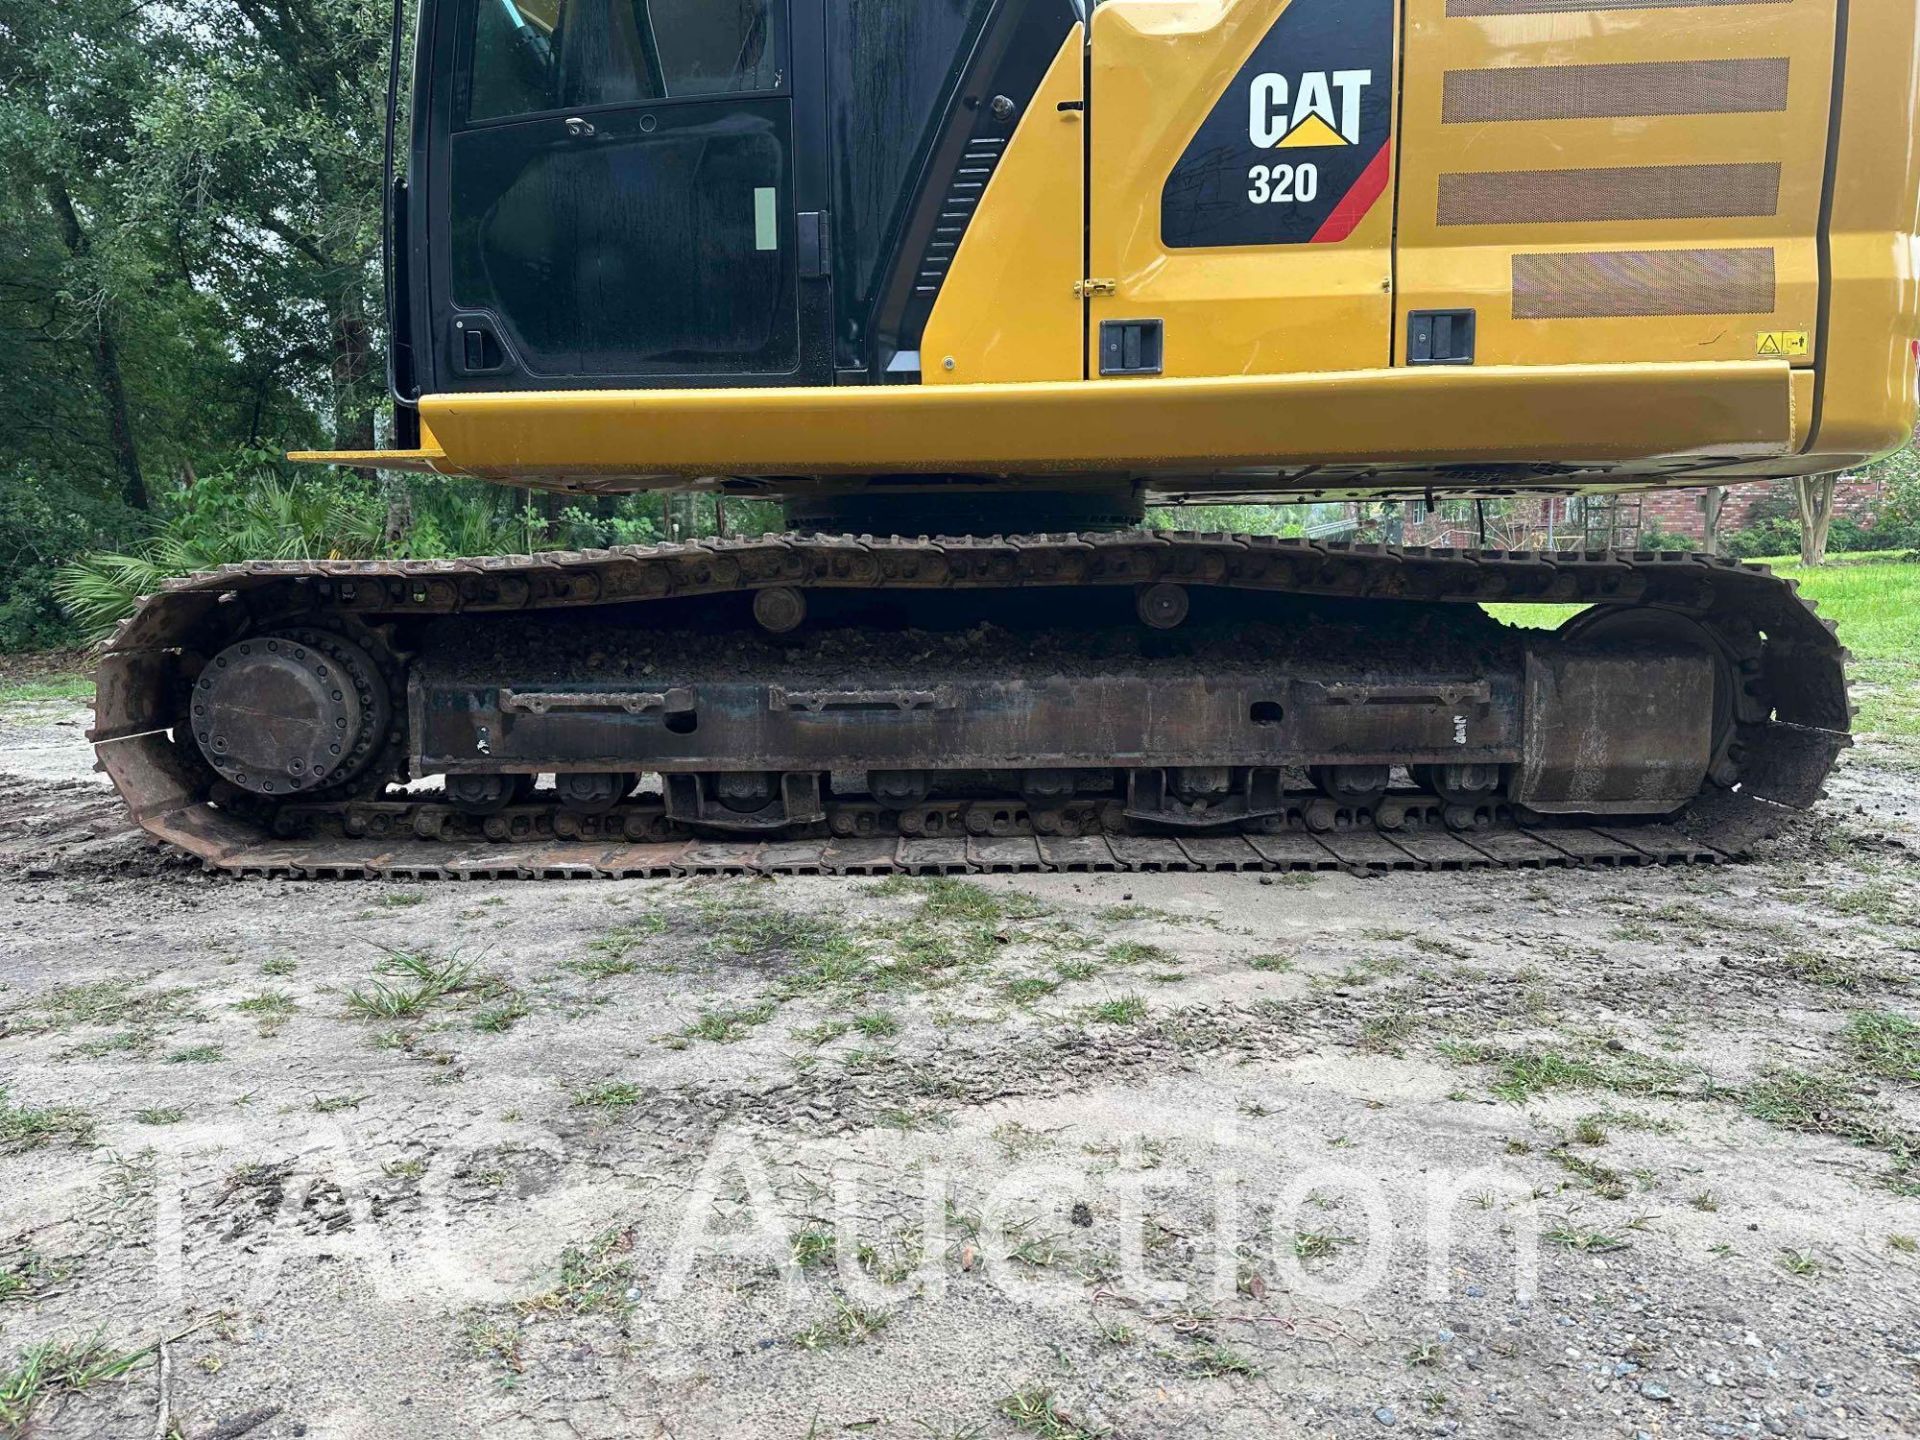 2018 CAT 320 Hydraulic Excavator - Image 41 of 82